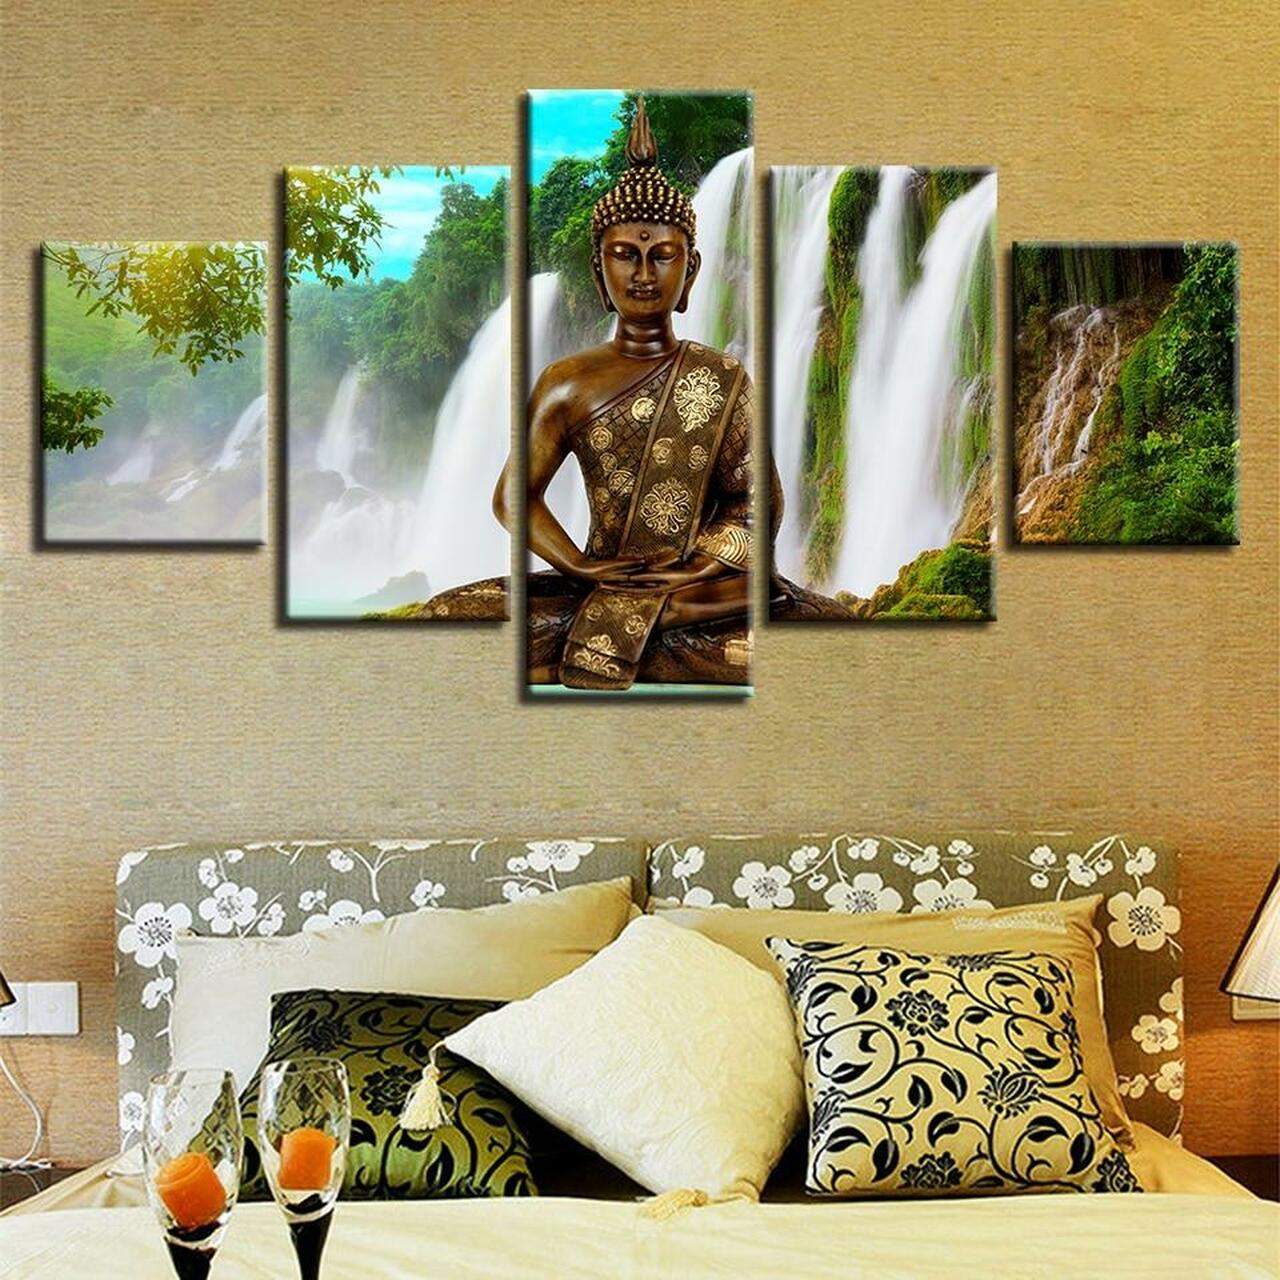 waterfall buddha 5 pices peinture sur toile impression sur toile toile art pour la dcoration intrieureimdfm